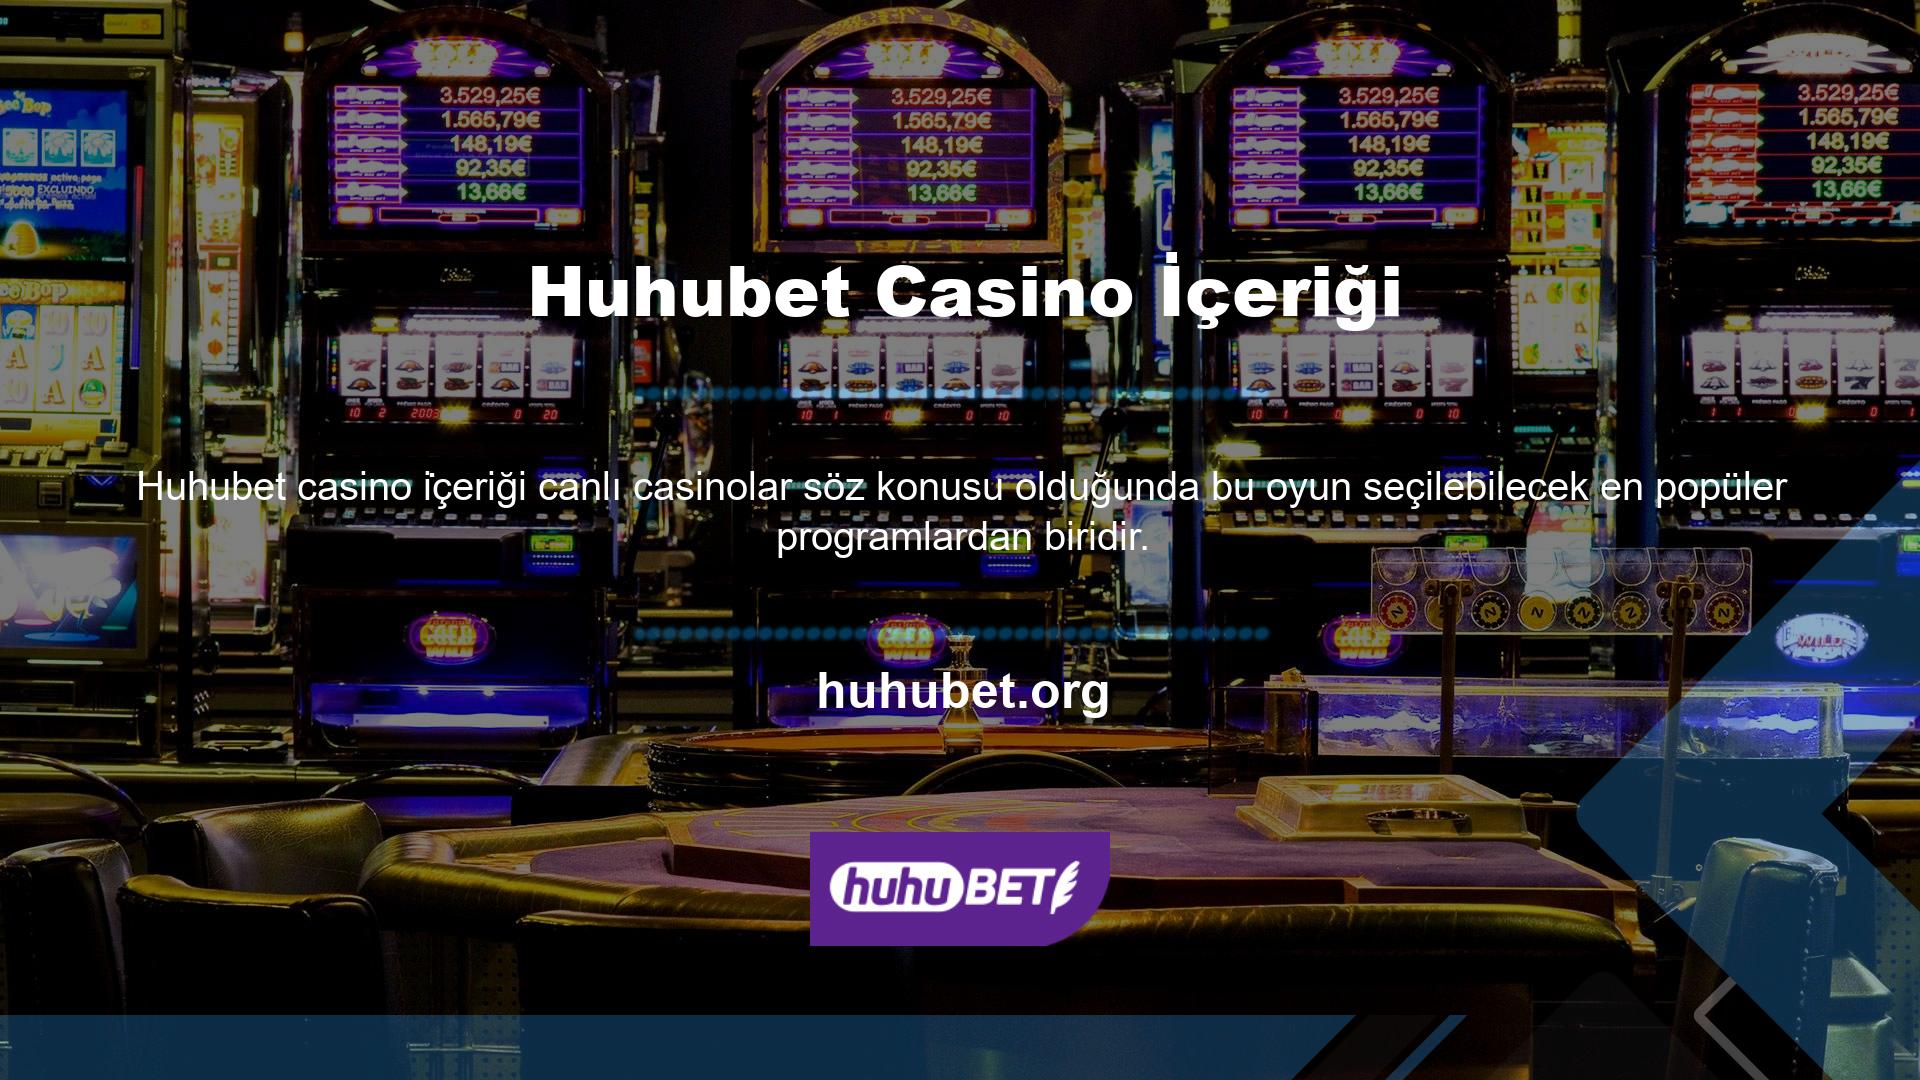 Bu, üyelerin Huhubet Casino'nun bahis içeriğine ilişkin canlı oranlara istedikleri zaman erişmelerine olanak tanır